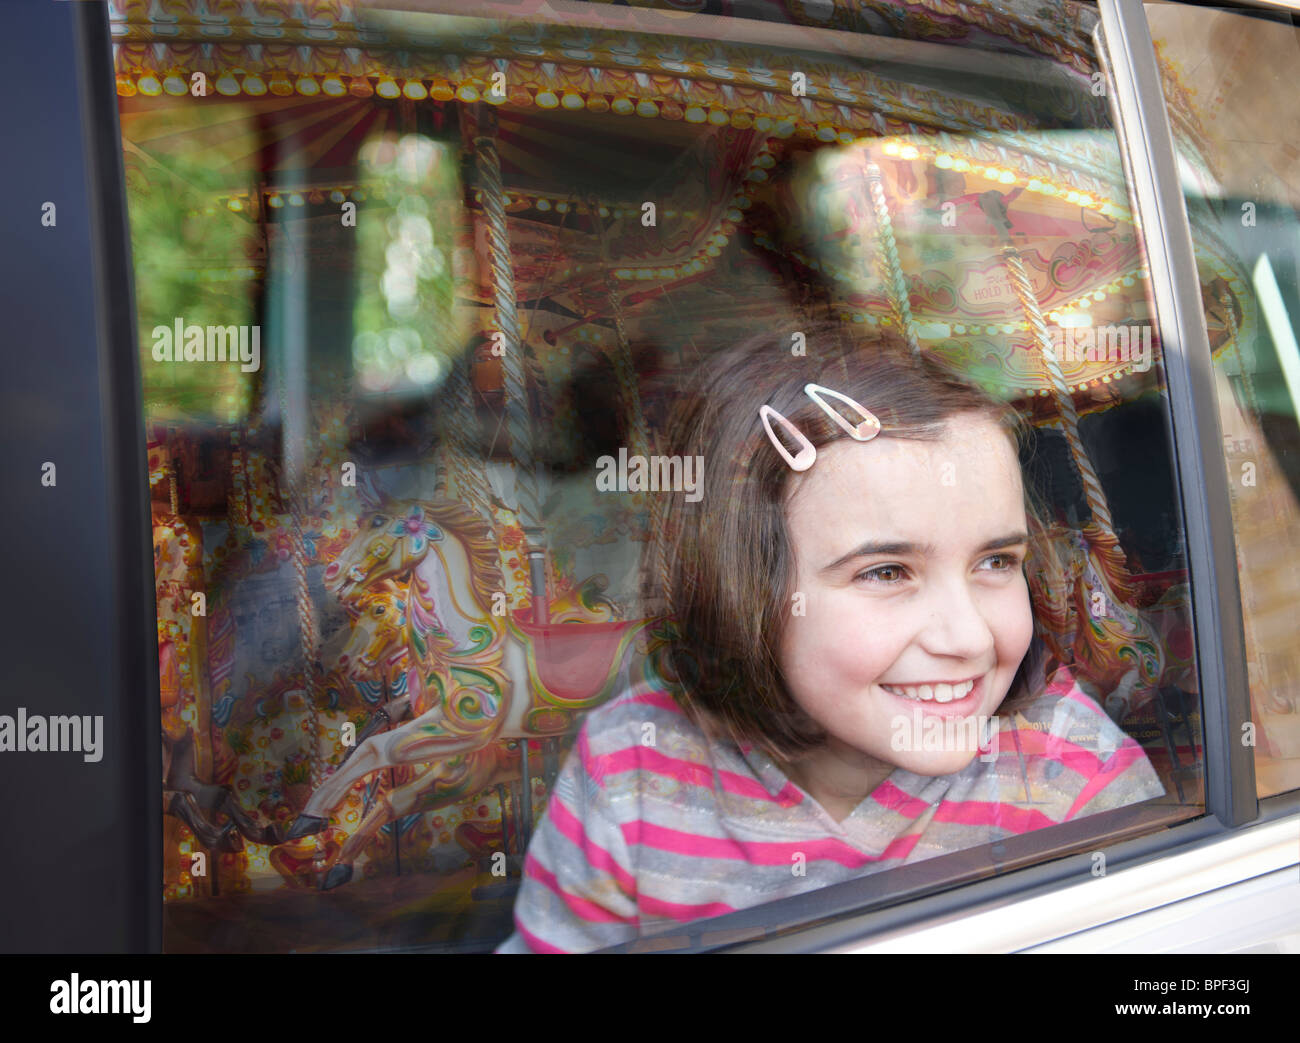 Chica sonriente y mirando por la ventana del automóvil en el recinto ferial paseo con reflejo de carrusel en vidrio Foto de stock